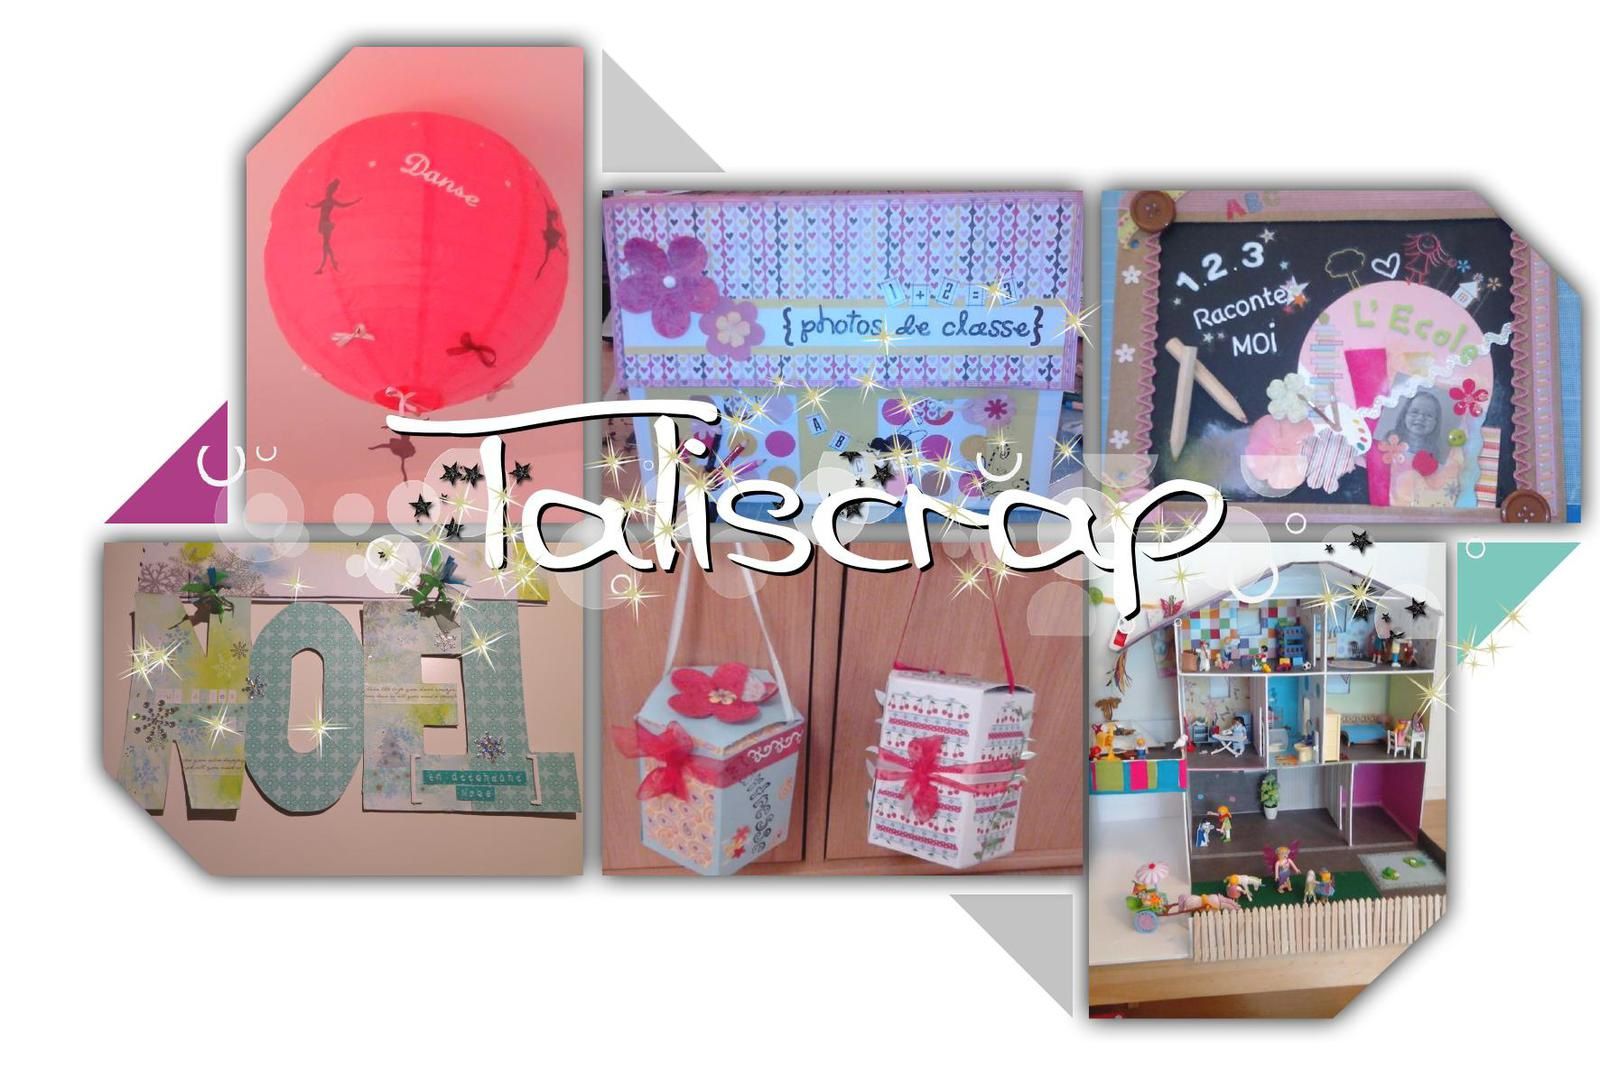 Taliscrap.over-blog.com